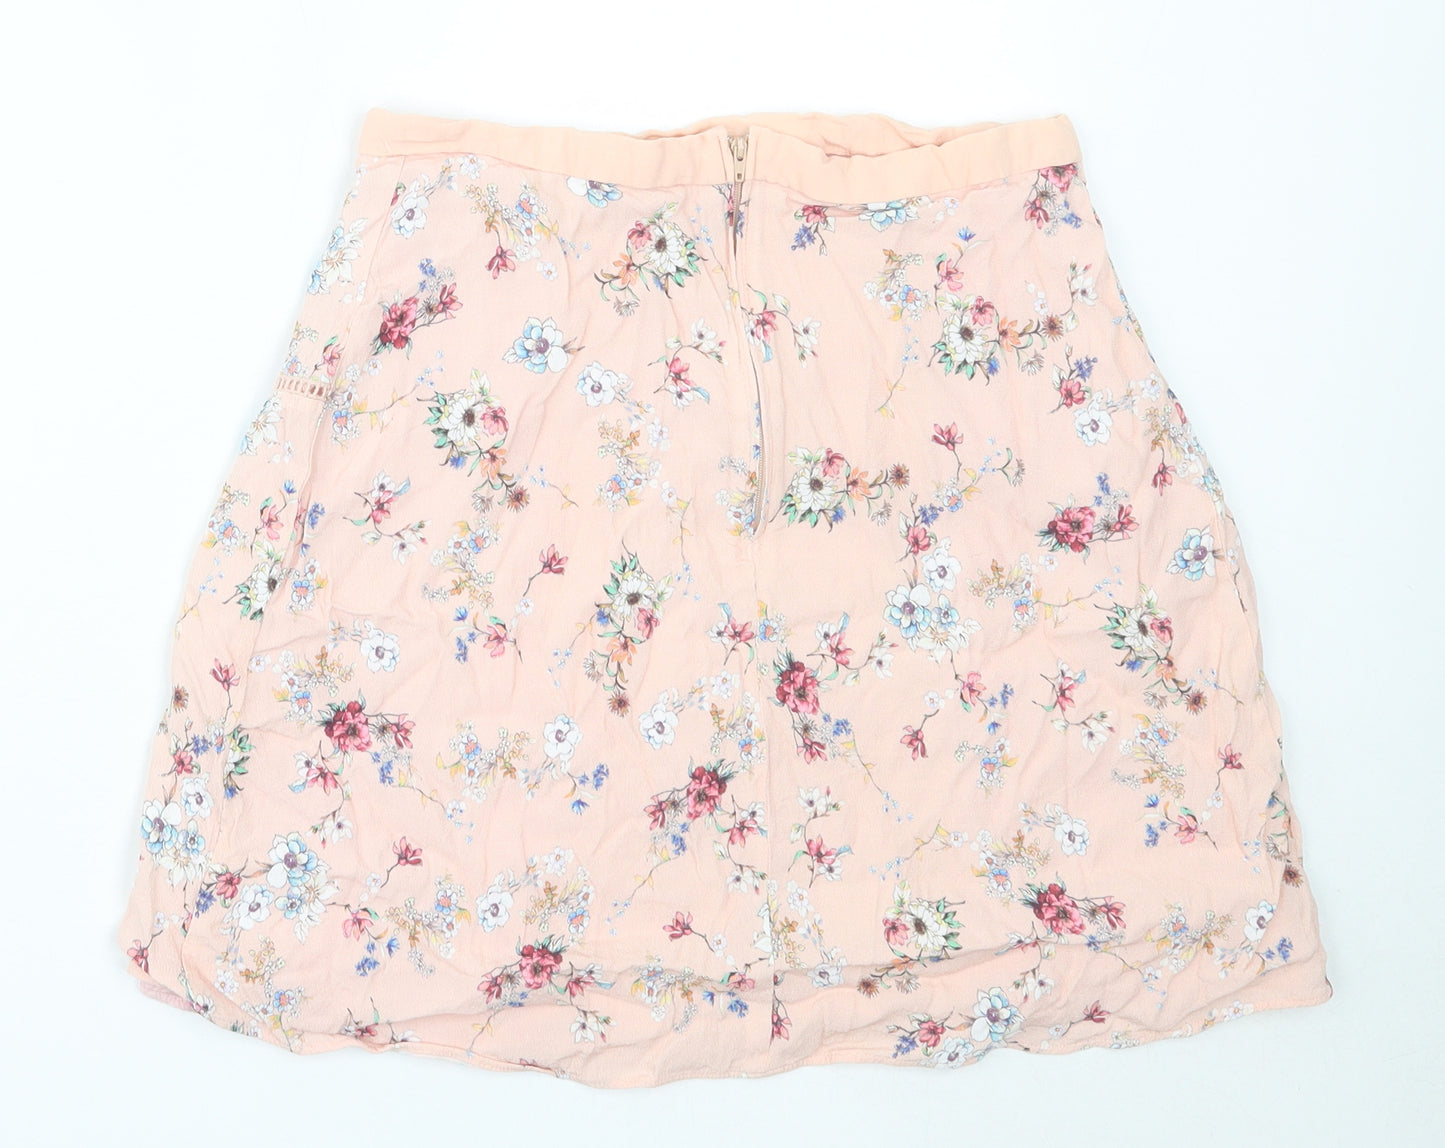 NAF NAF Womens Pink Floral Viscose Mini Skirt Size 40